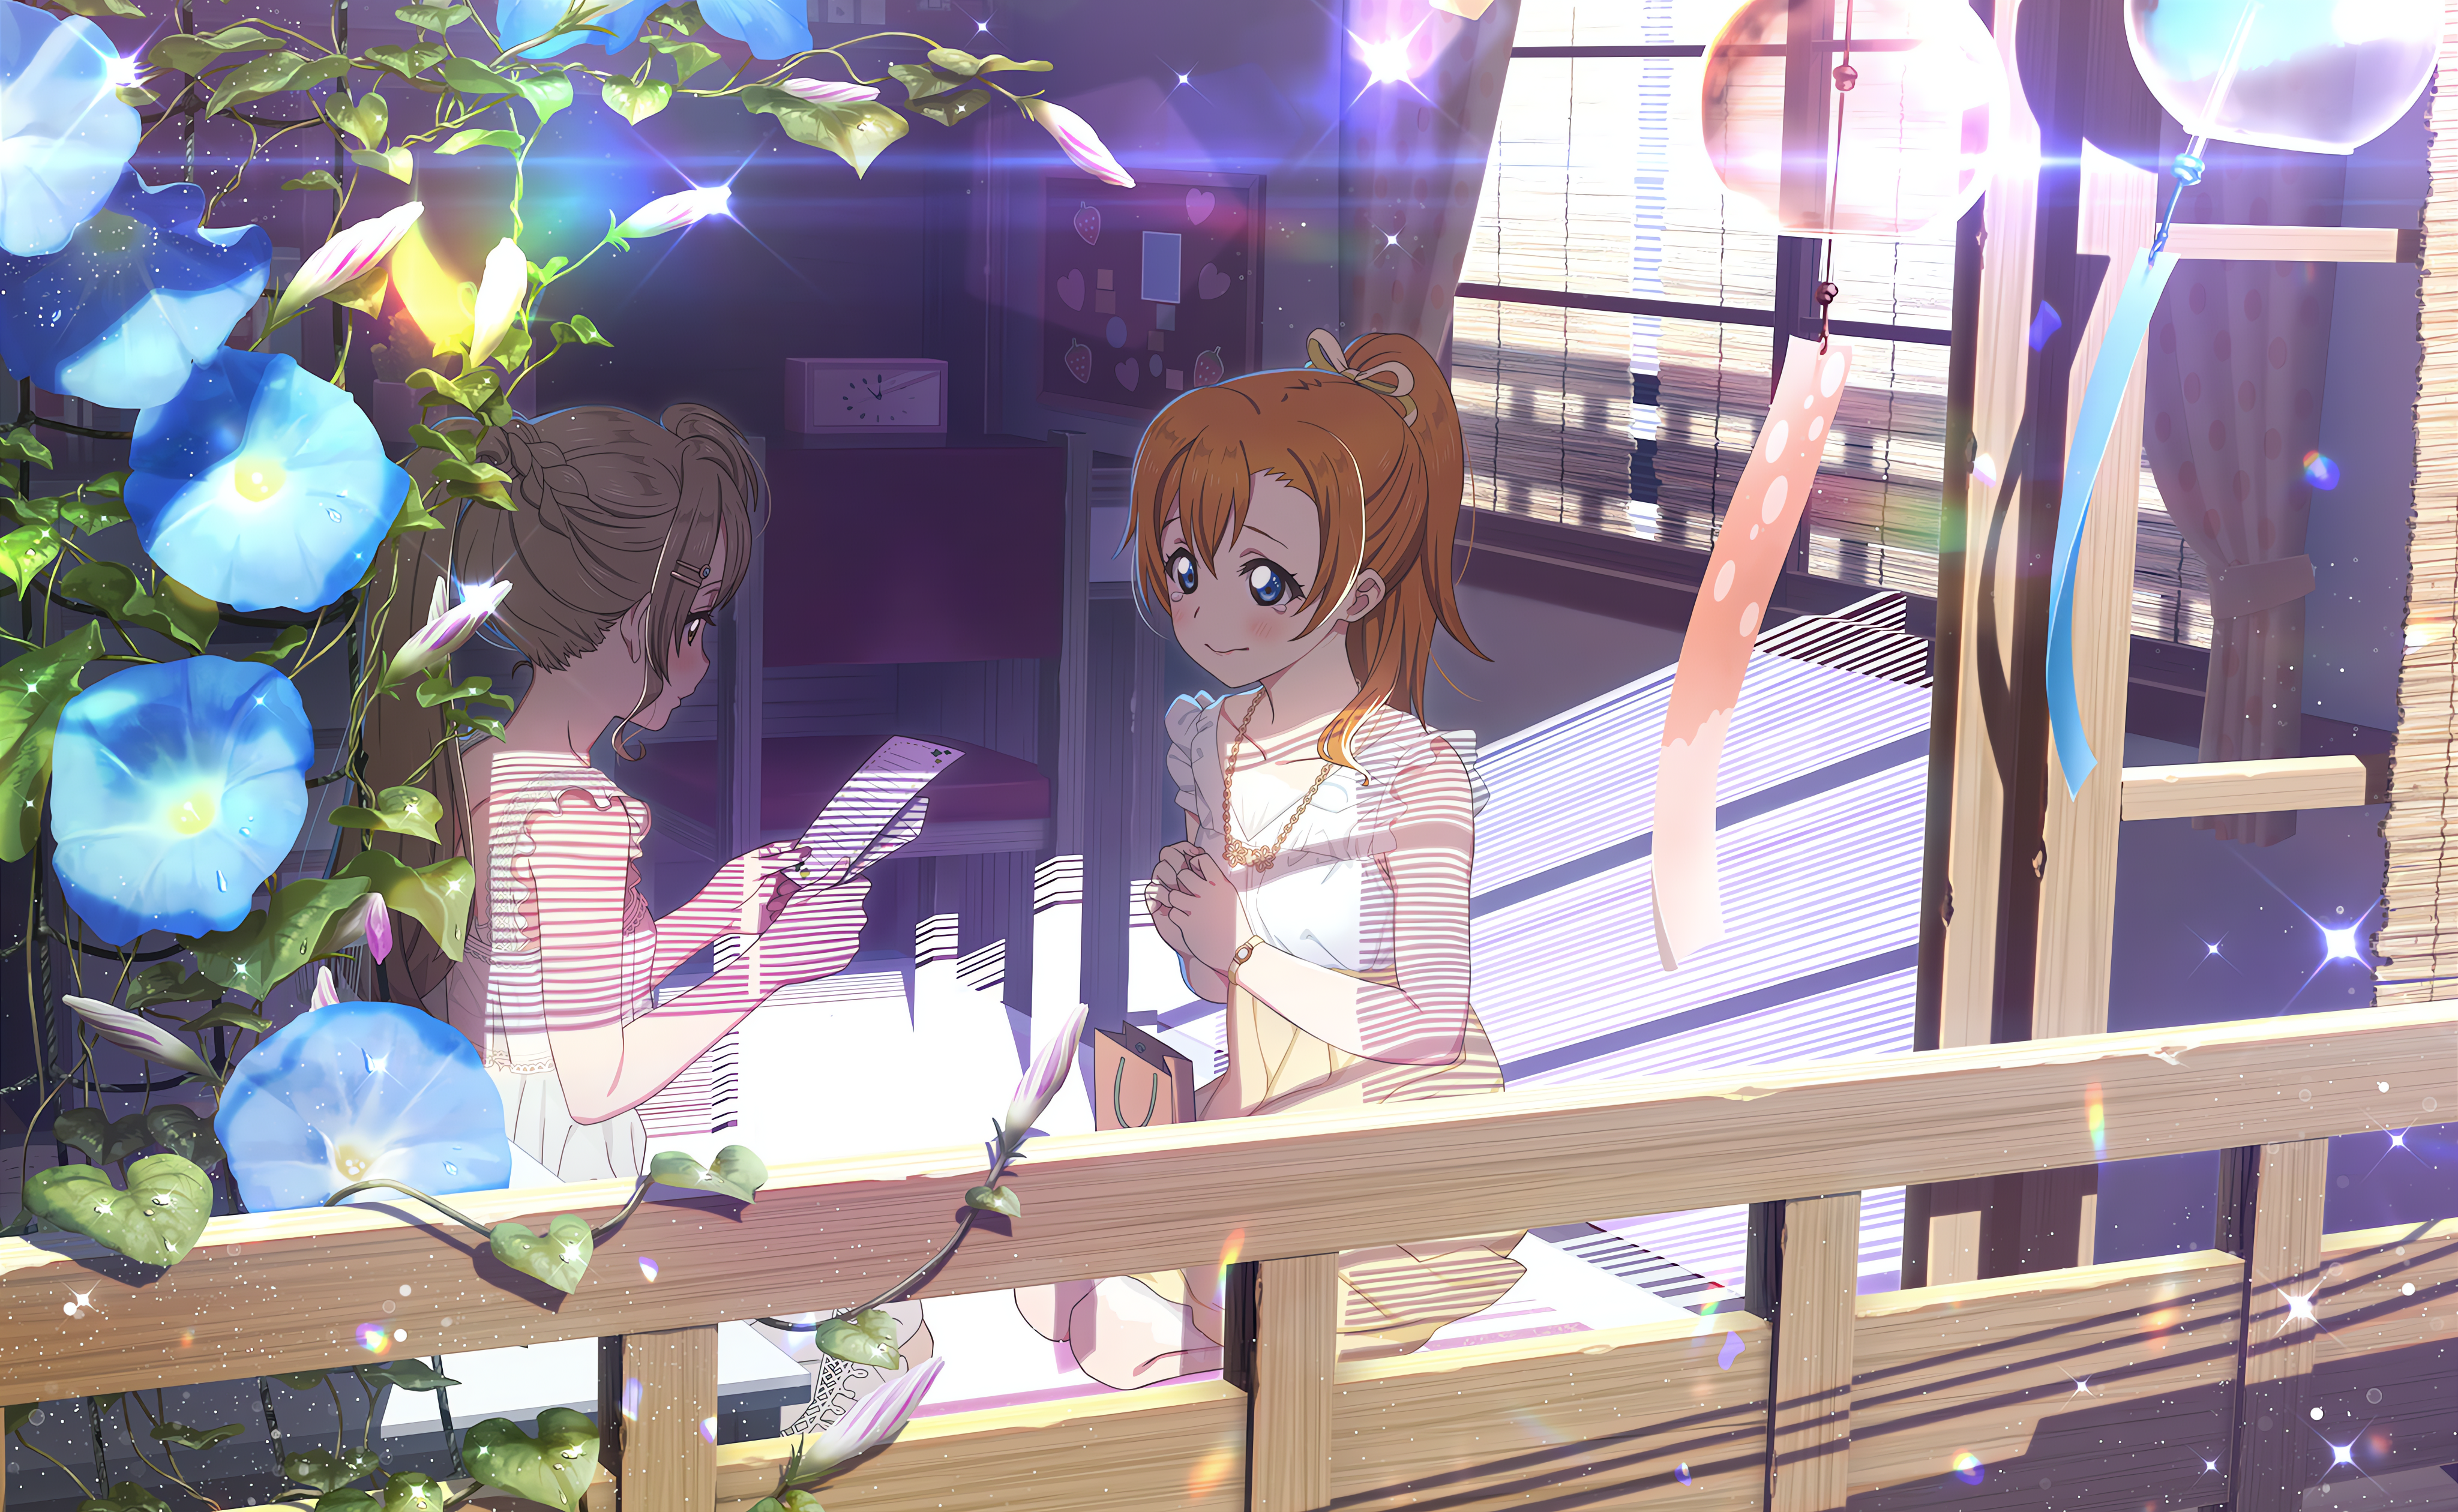 Anime 4096x2520 Kousaka Honoka Love Live! anime anime girls blushing tears leaves sunlight stars necklace bag flowers sitting